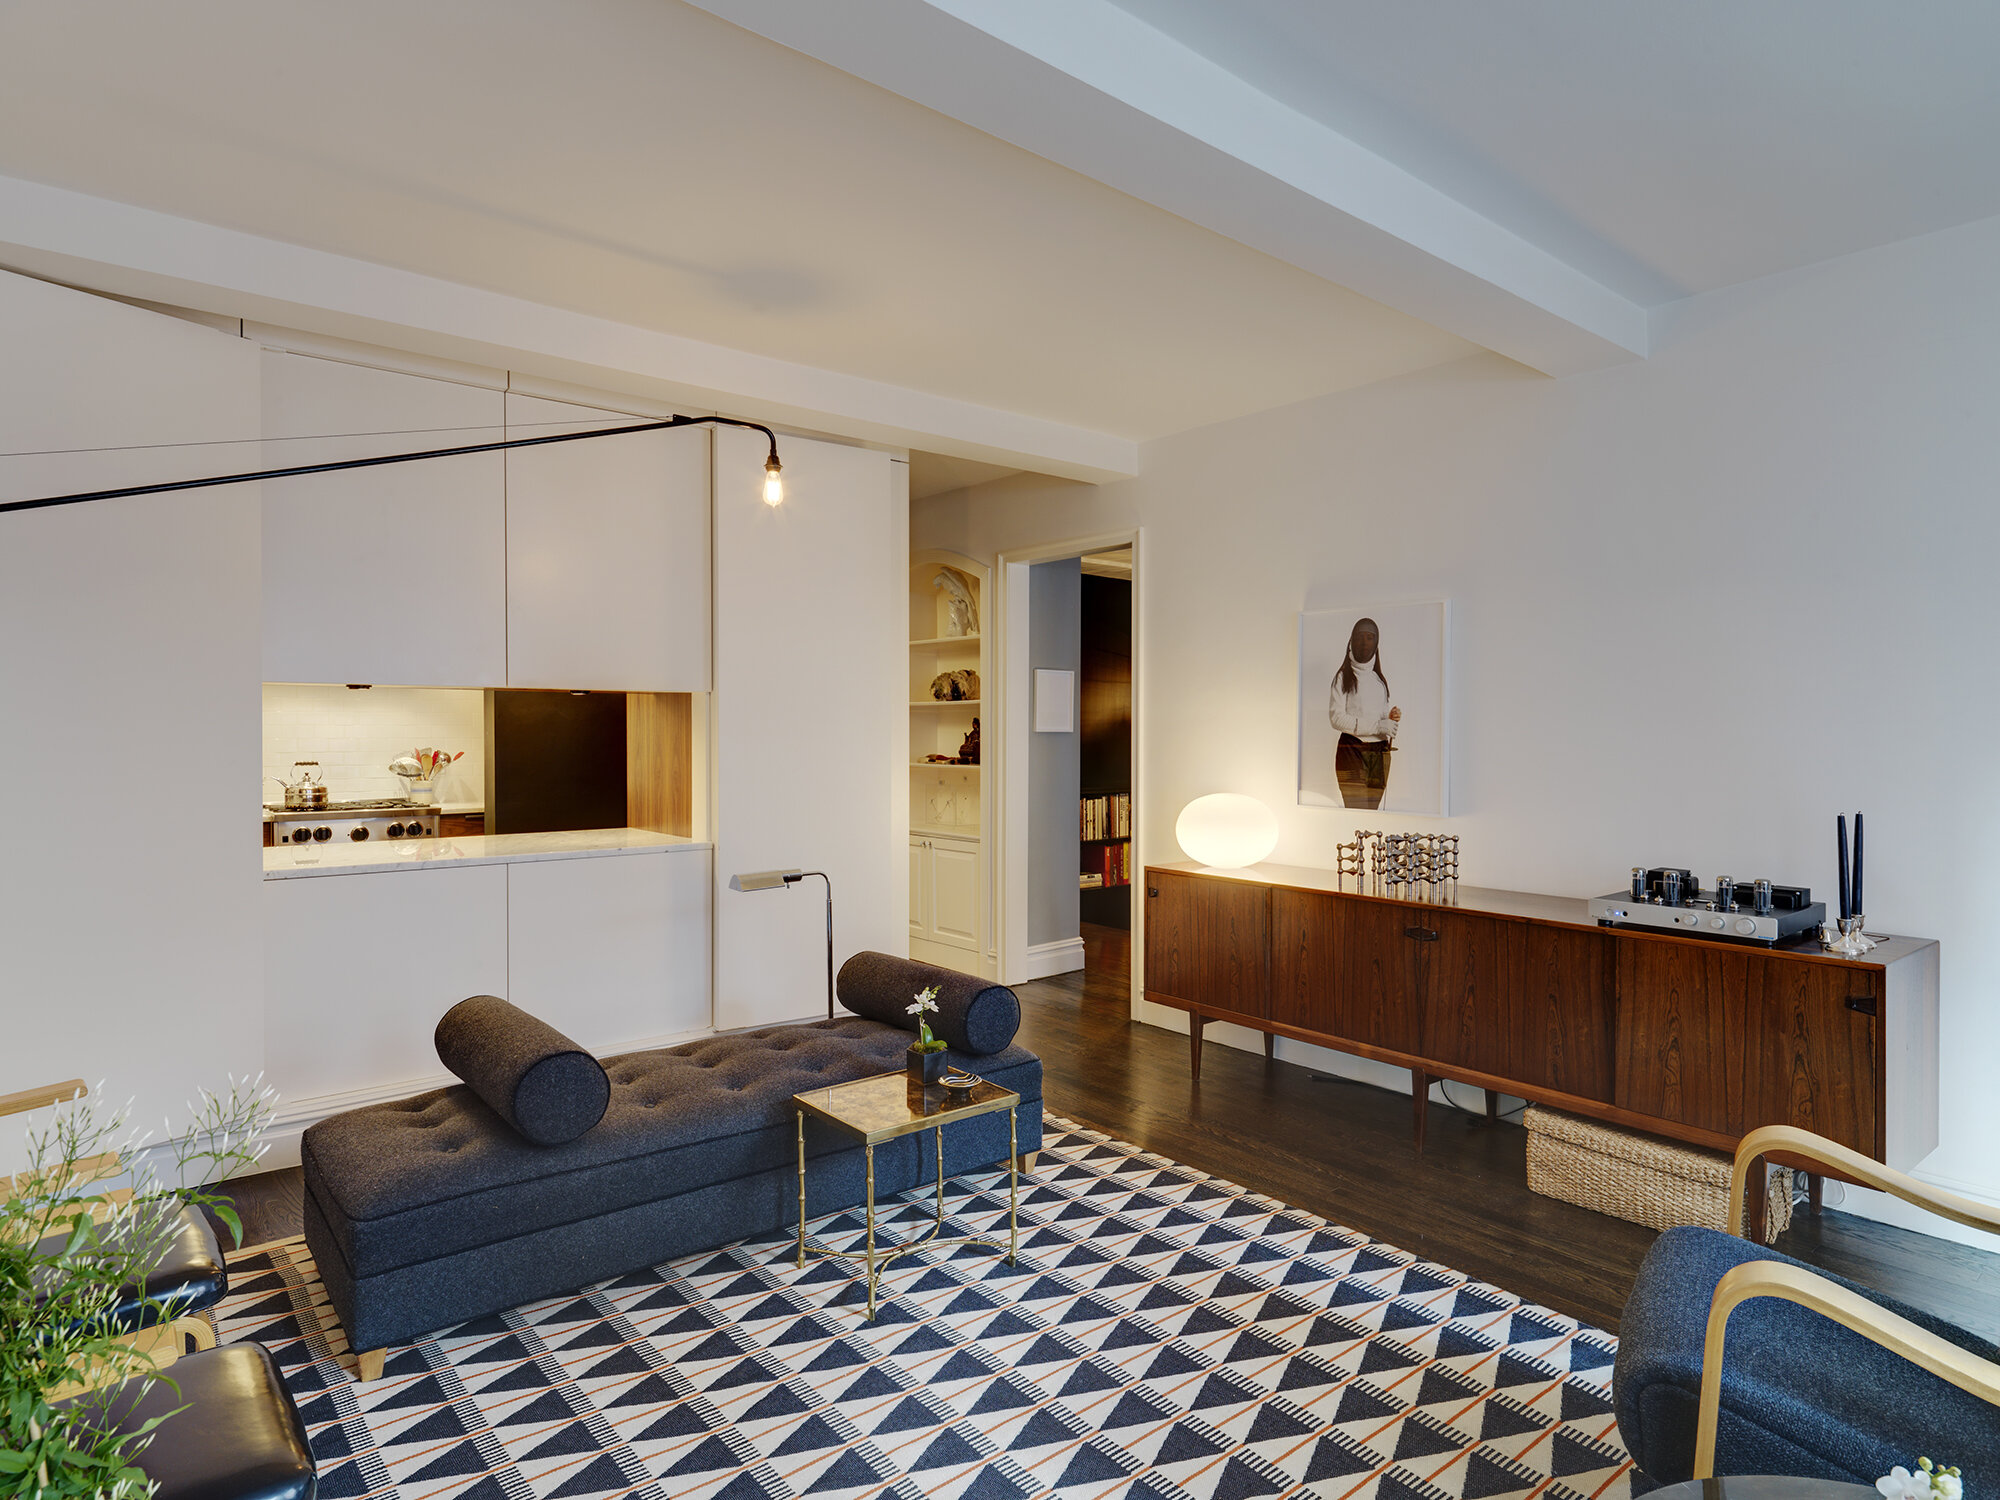  Elzay Residence, Chelsea, NY, NY, Architect: Bade Stageberg Cox 